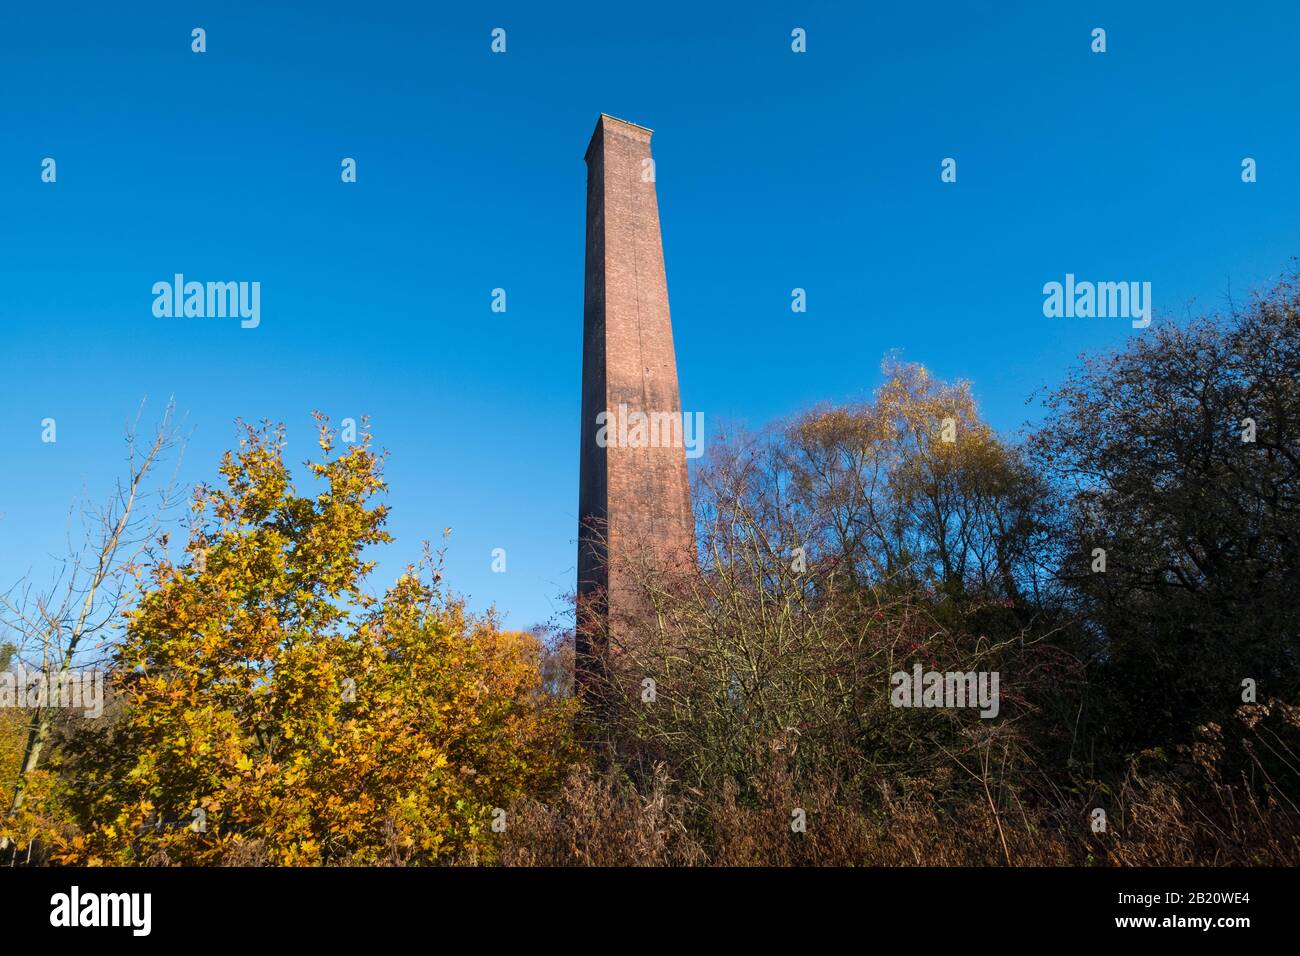 Stirchley Chimney in Telford Town Park, Shropshire, England, UK Stock Photo